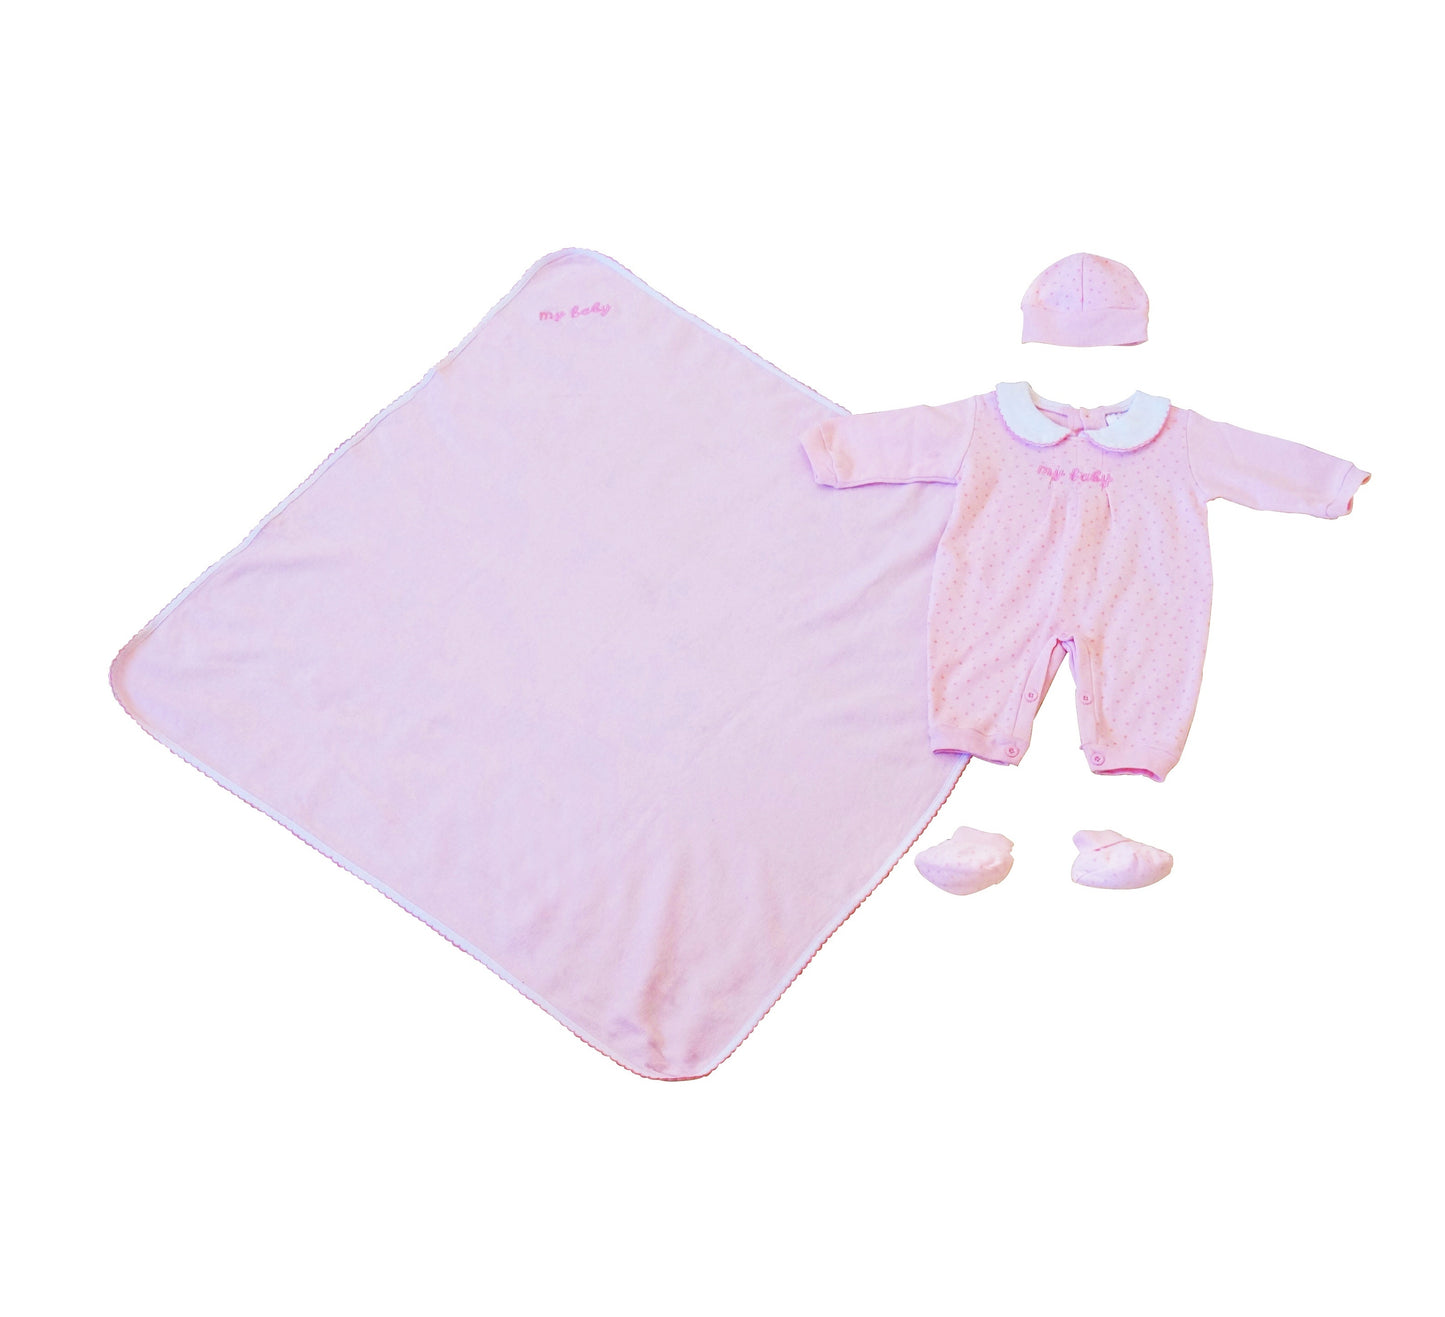 Newborn Baby Clothing Set 2 packs